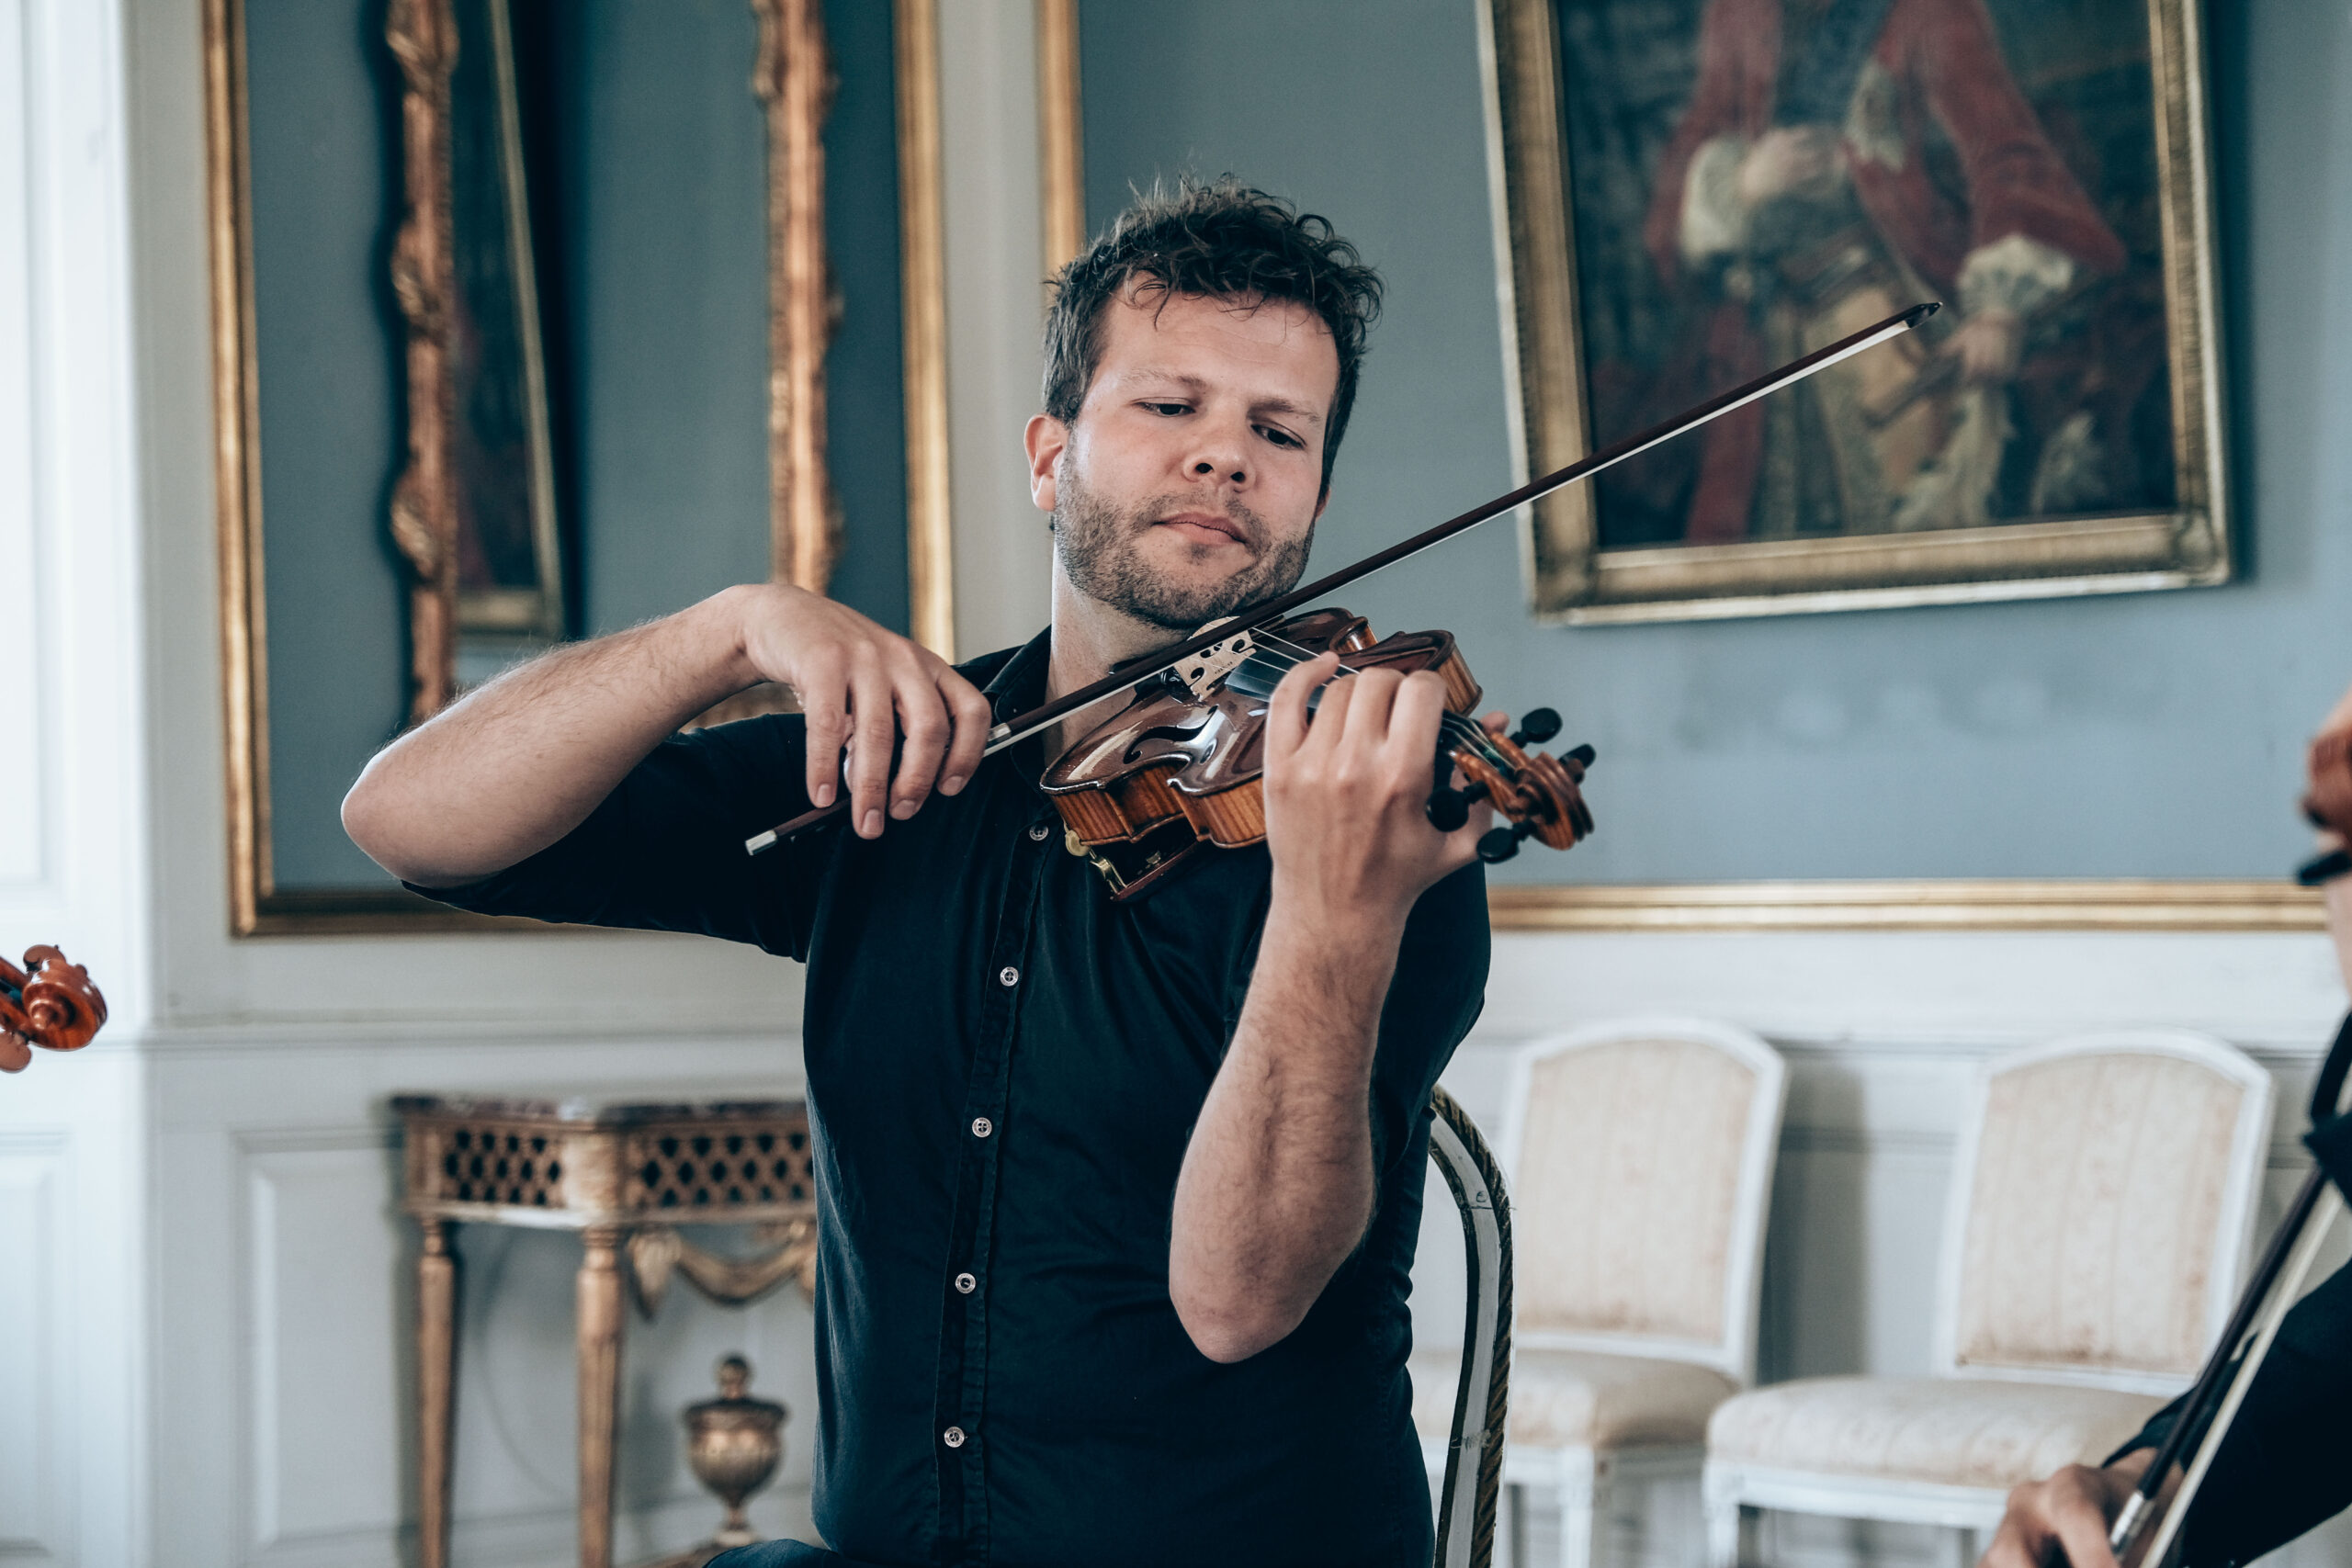 violinist dansk violin stryger strygere musik romantisk inderligt romantisk musik udendørs vielse vielser i kirke kirkevielse